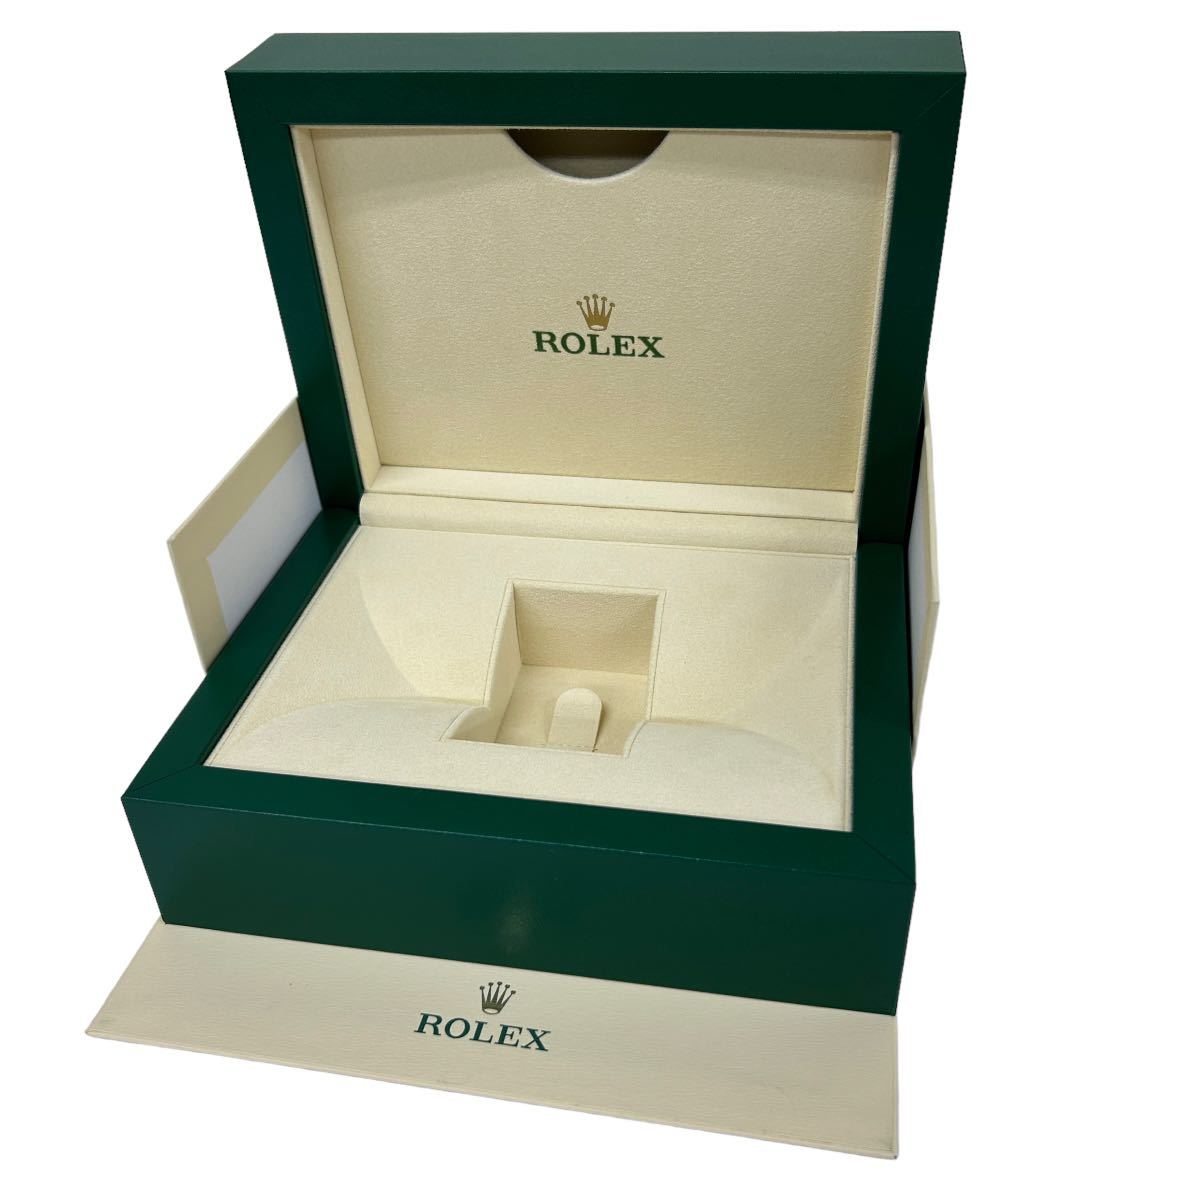 印象のデザイン  ロレックス 箱 他付属品 グリーン 緑 箱、保証書